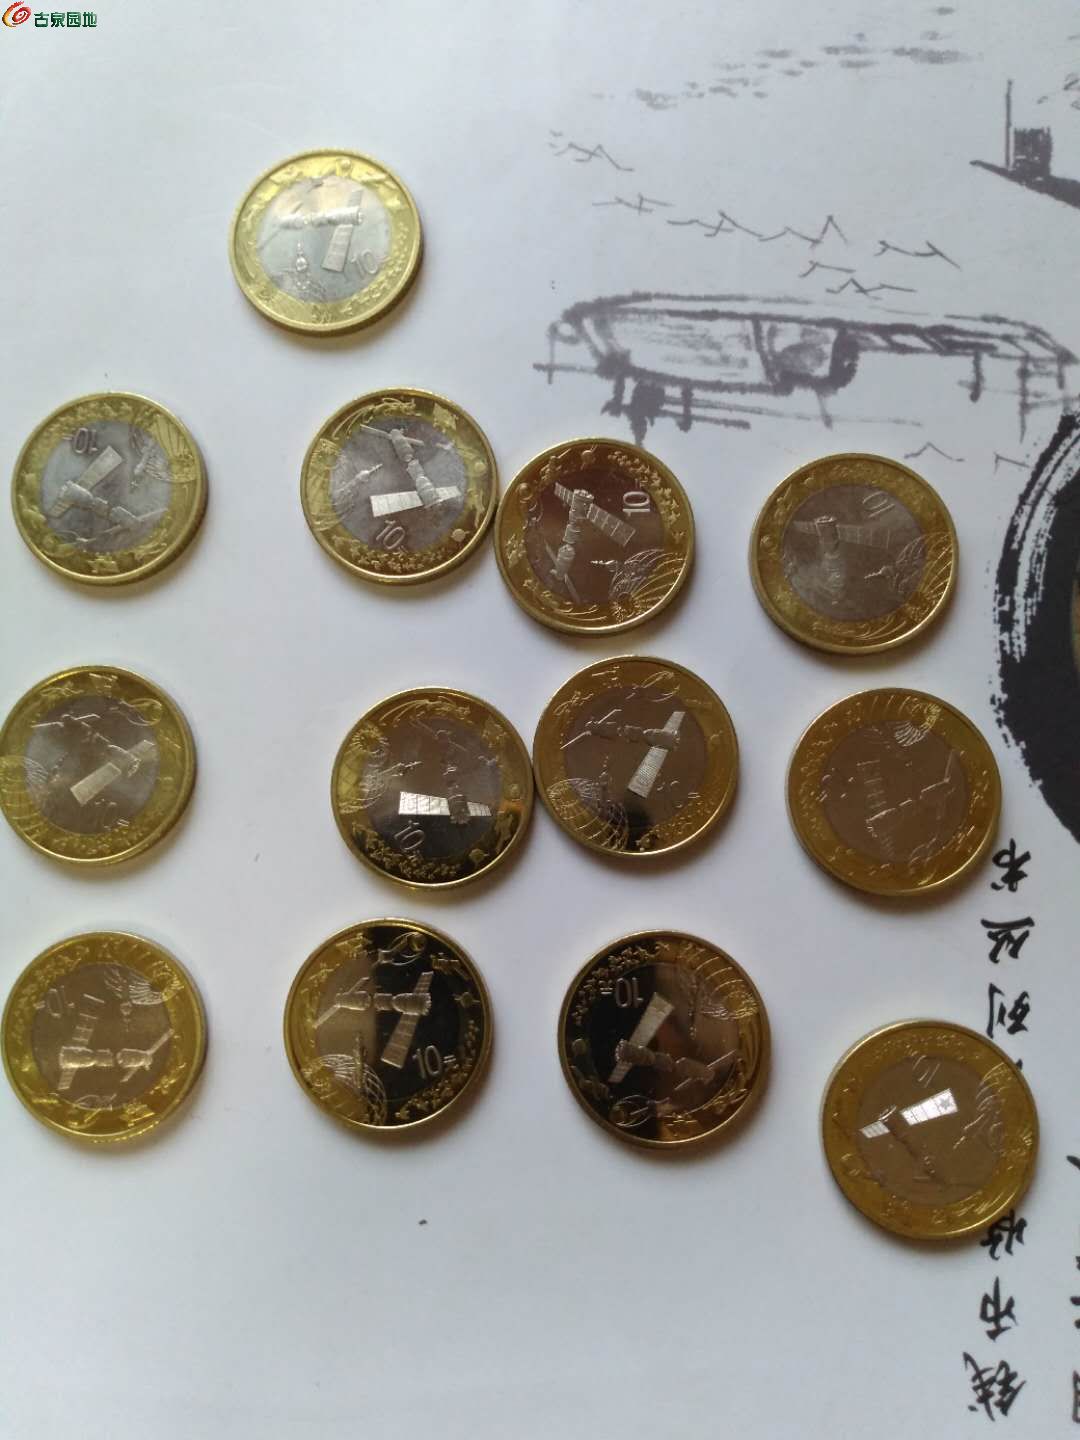 13枚硬币图片